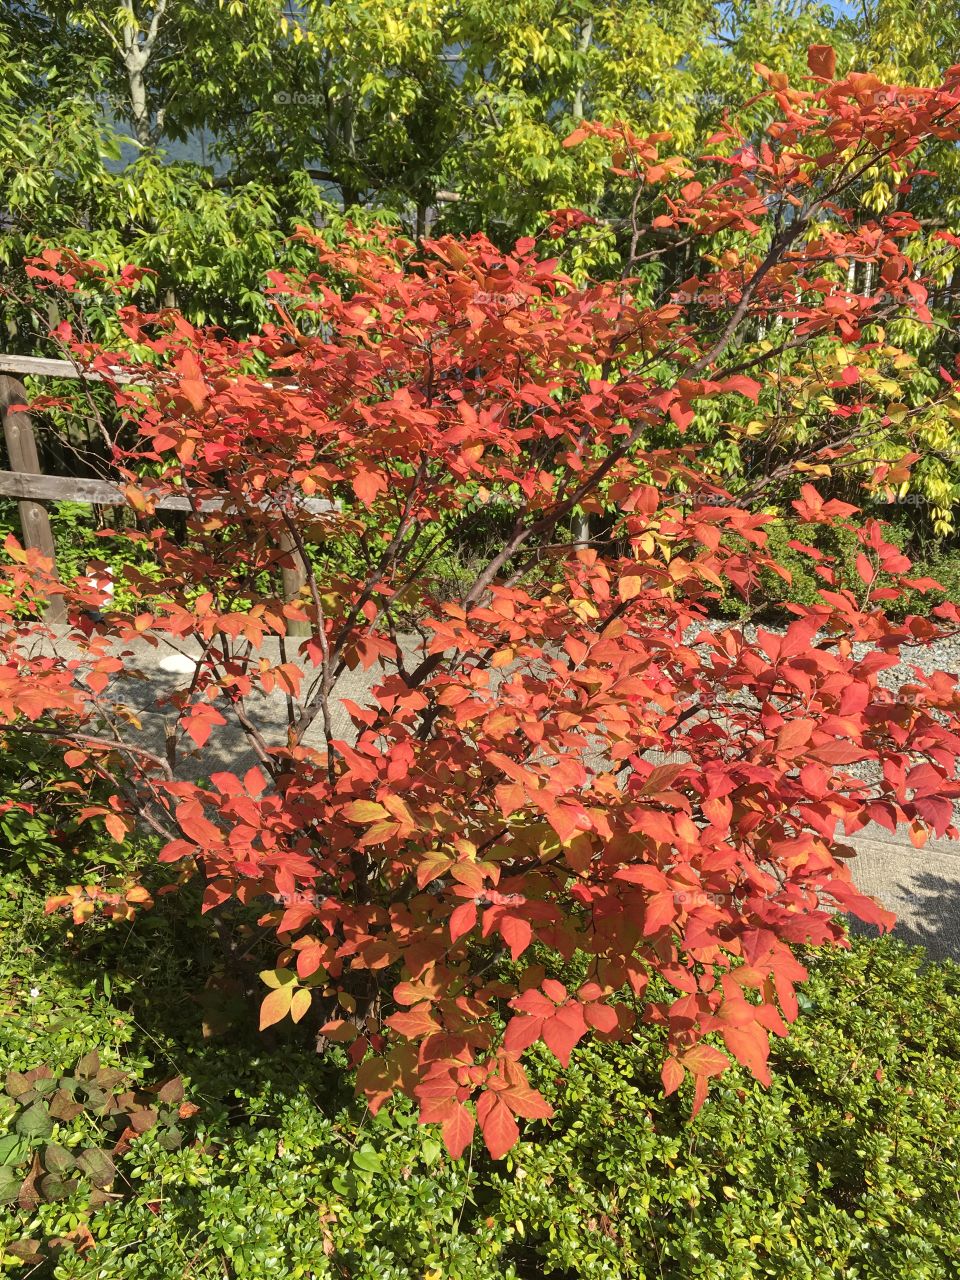 Autumn leaves - just outside Nobu Restaurant